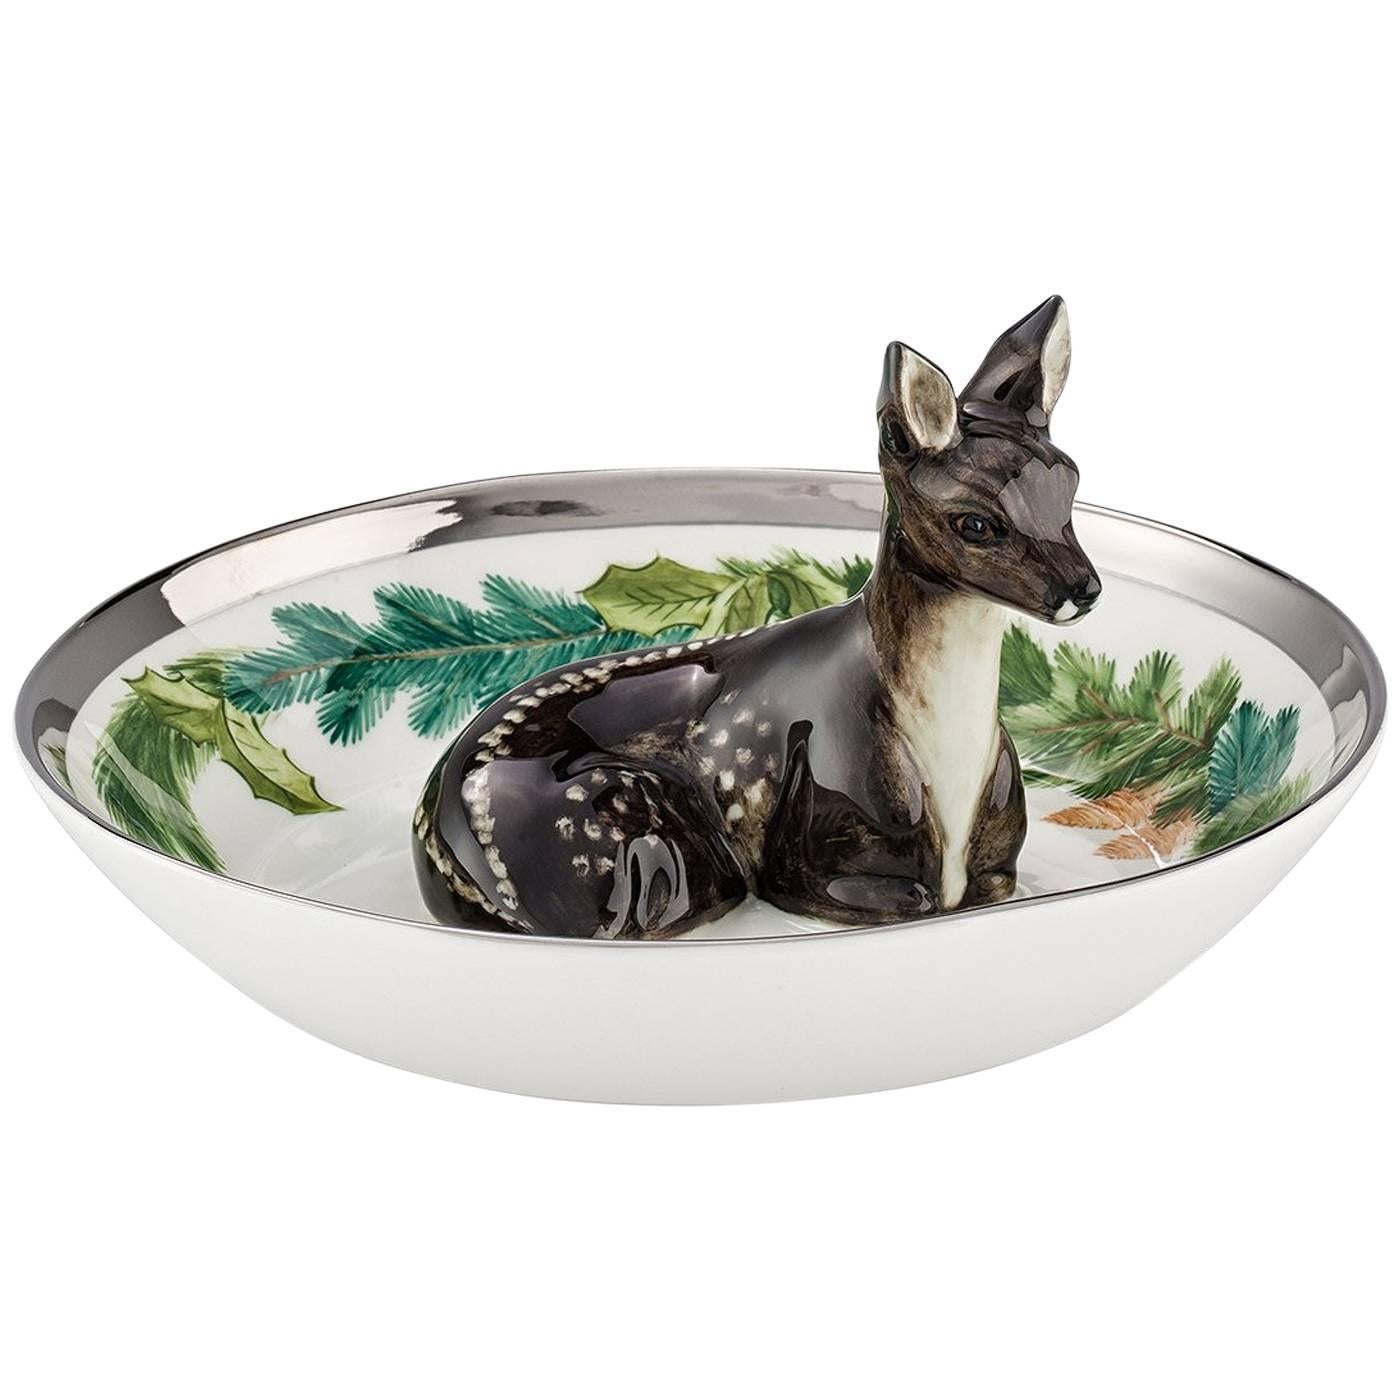 Black Forest German Porcelain Bowl with Deer Figure and Garlande